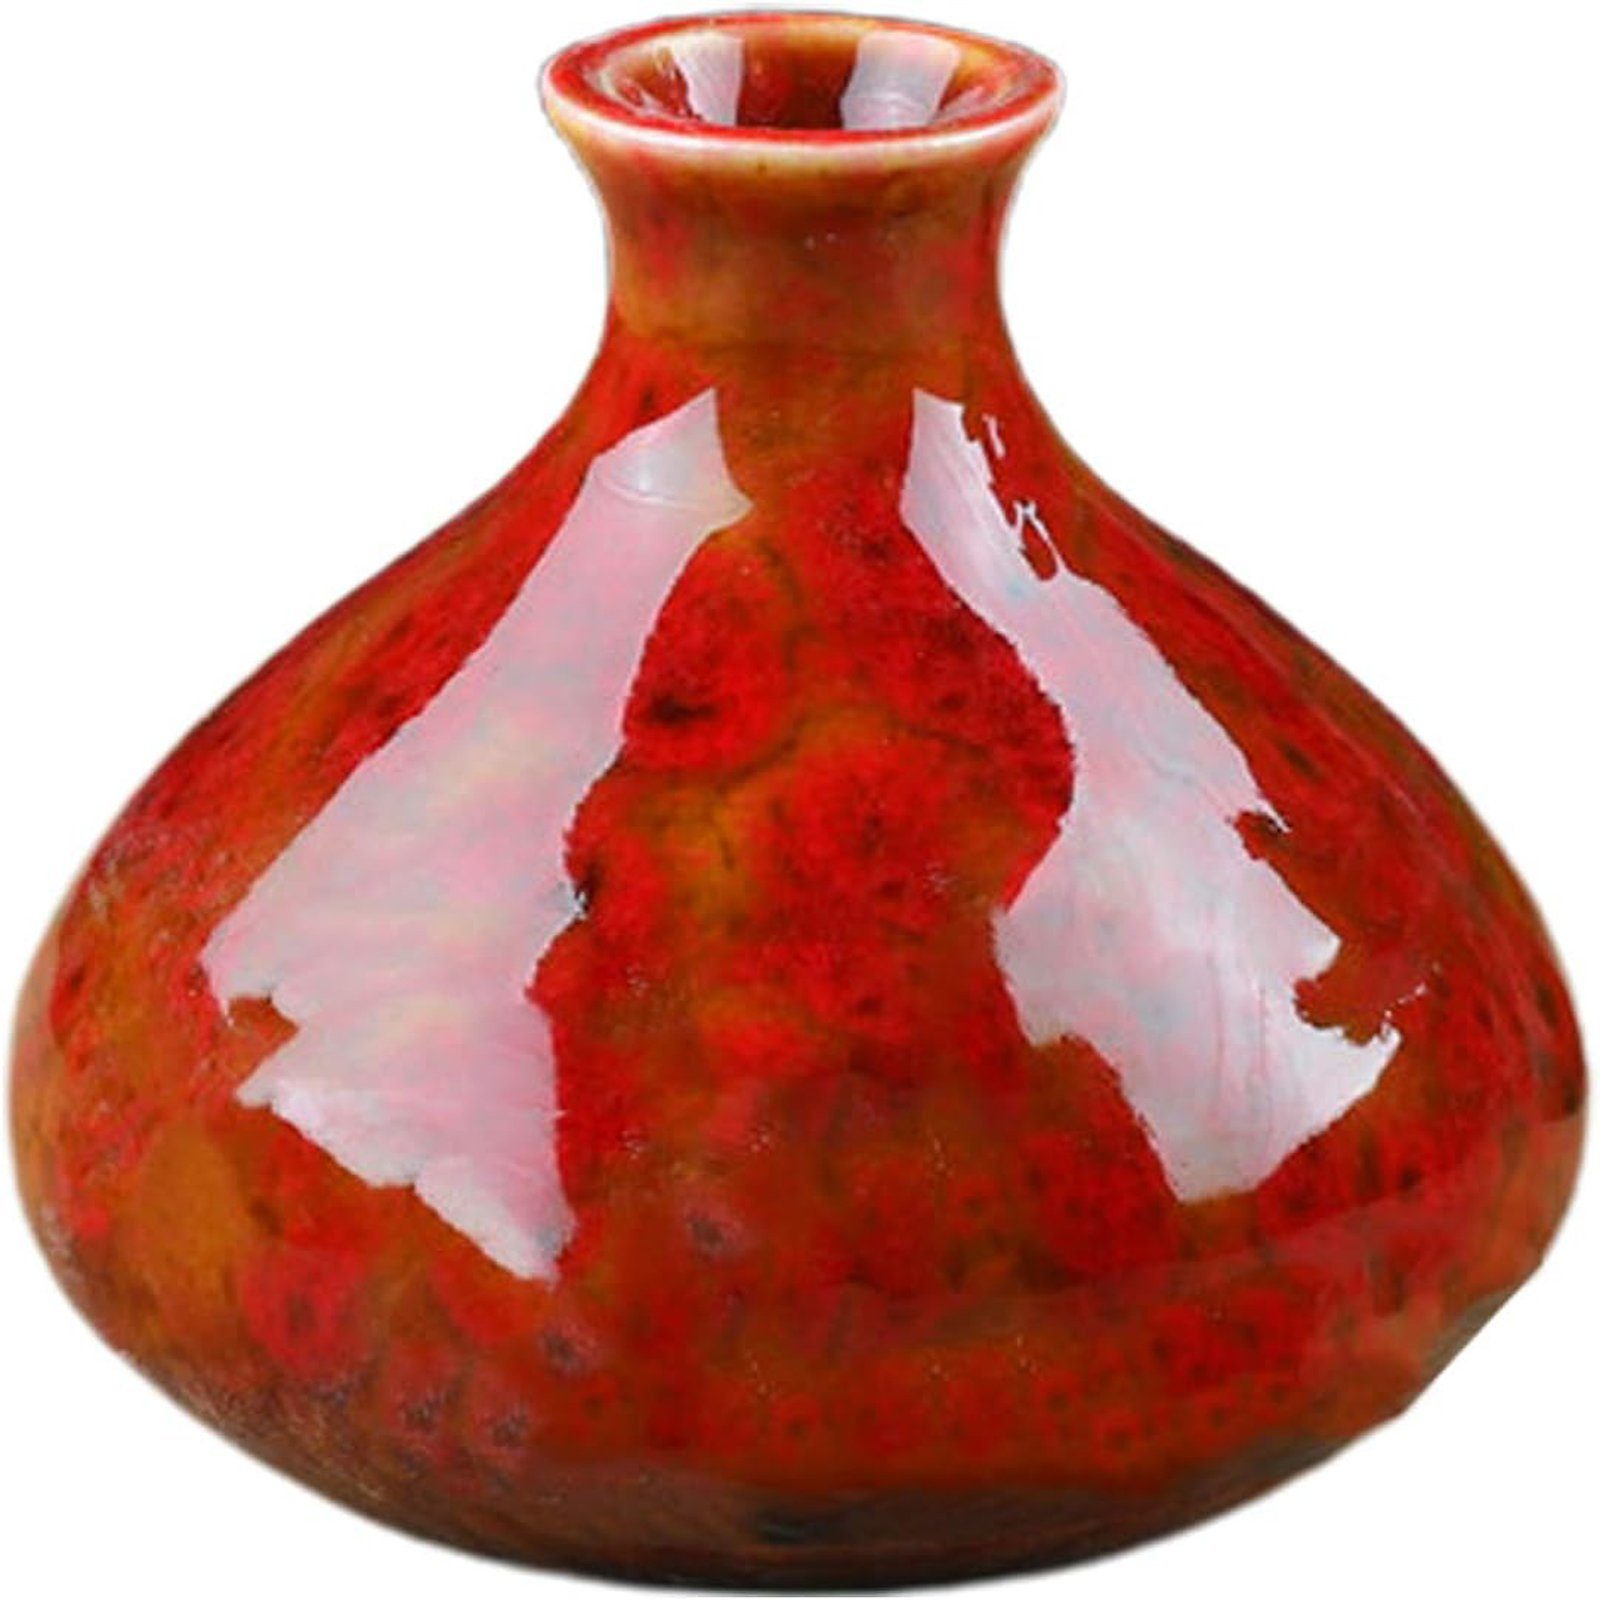 Kaliber Regal, Brenngeformte Wohnzimmer, Dekovase Bauch, Heimdekoration, Rot Keramik-Vase,großer für 2.4cm,7x7.5cm,bunt deko SEEZSSA Keramikvase,Blumentopf